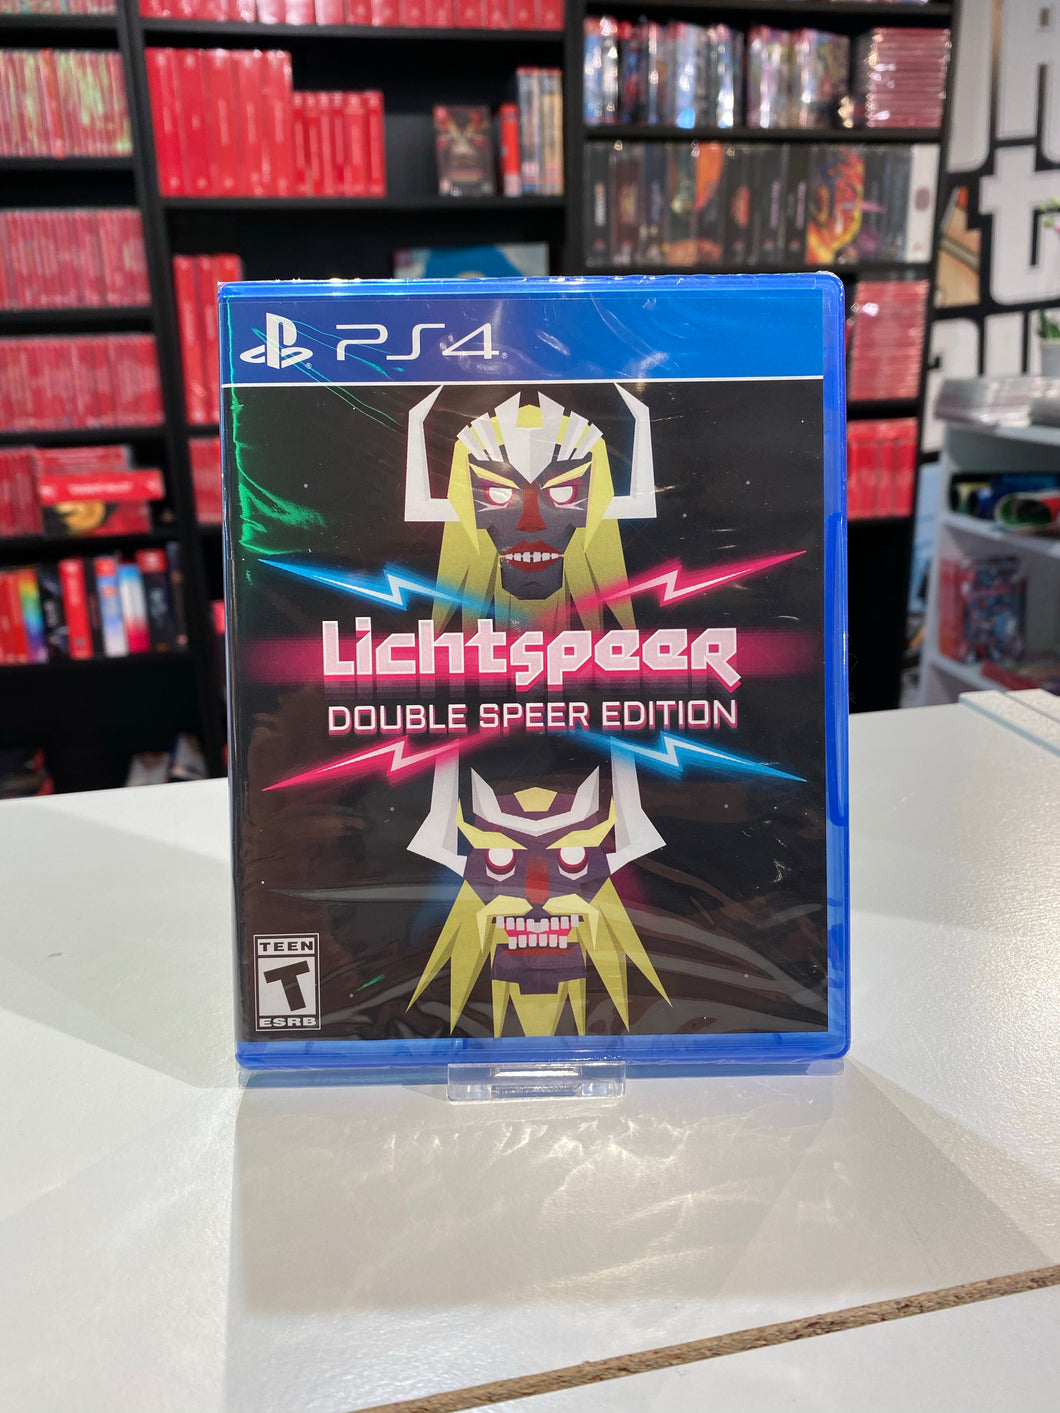 Lichtspeer Double speer Edition / Hard Copy Games / PS4 / 999 copies